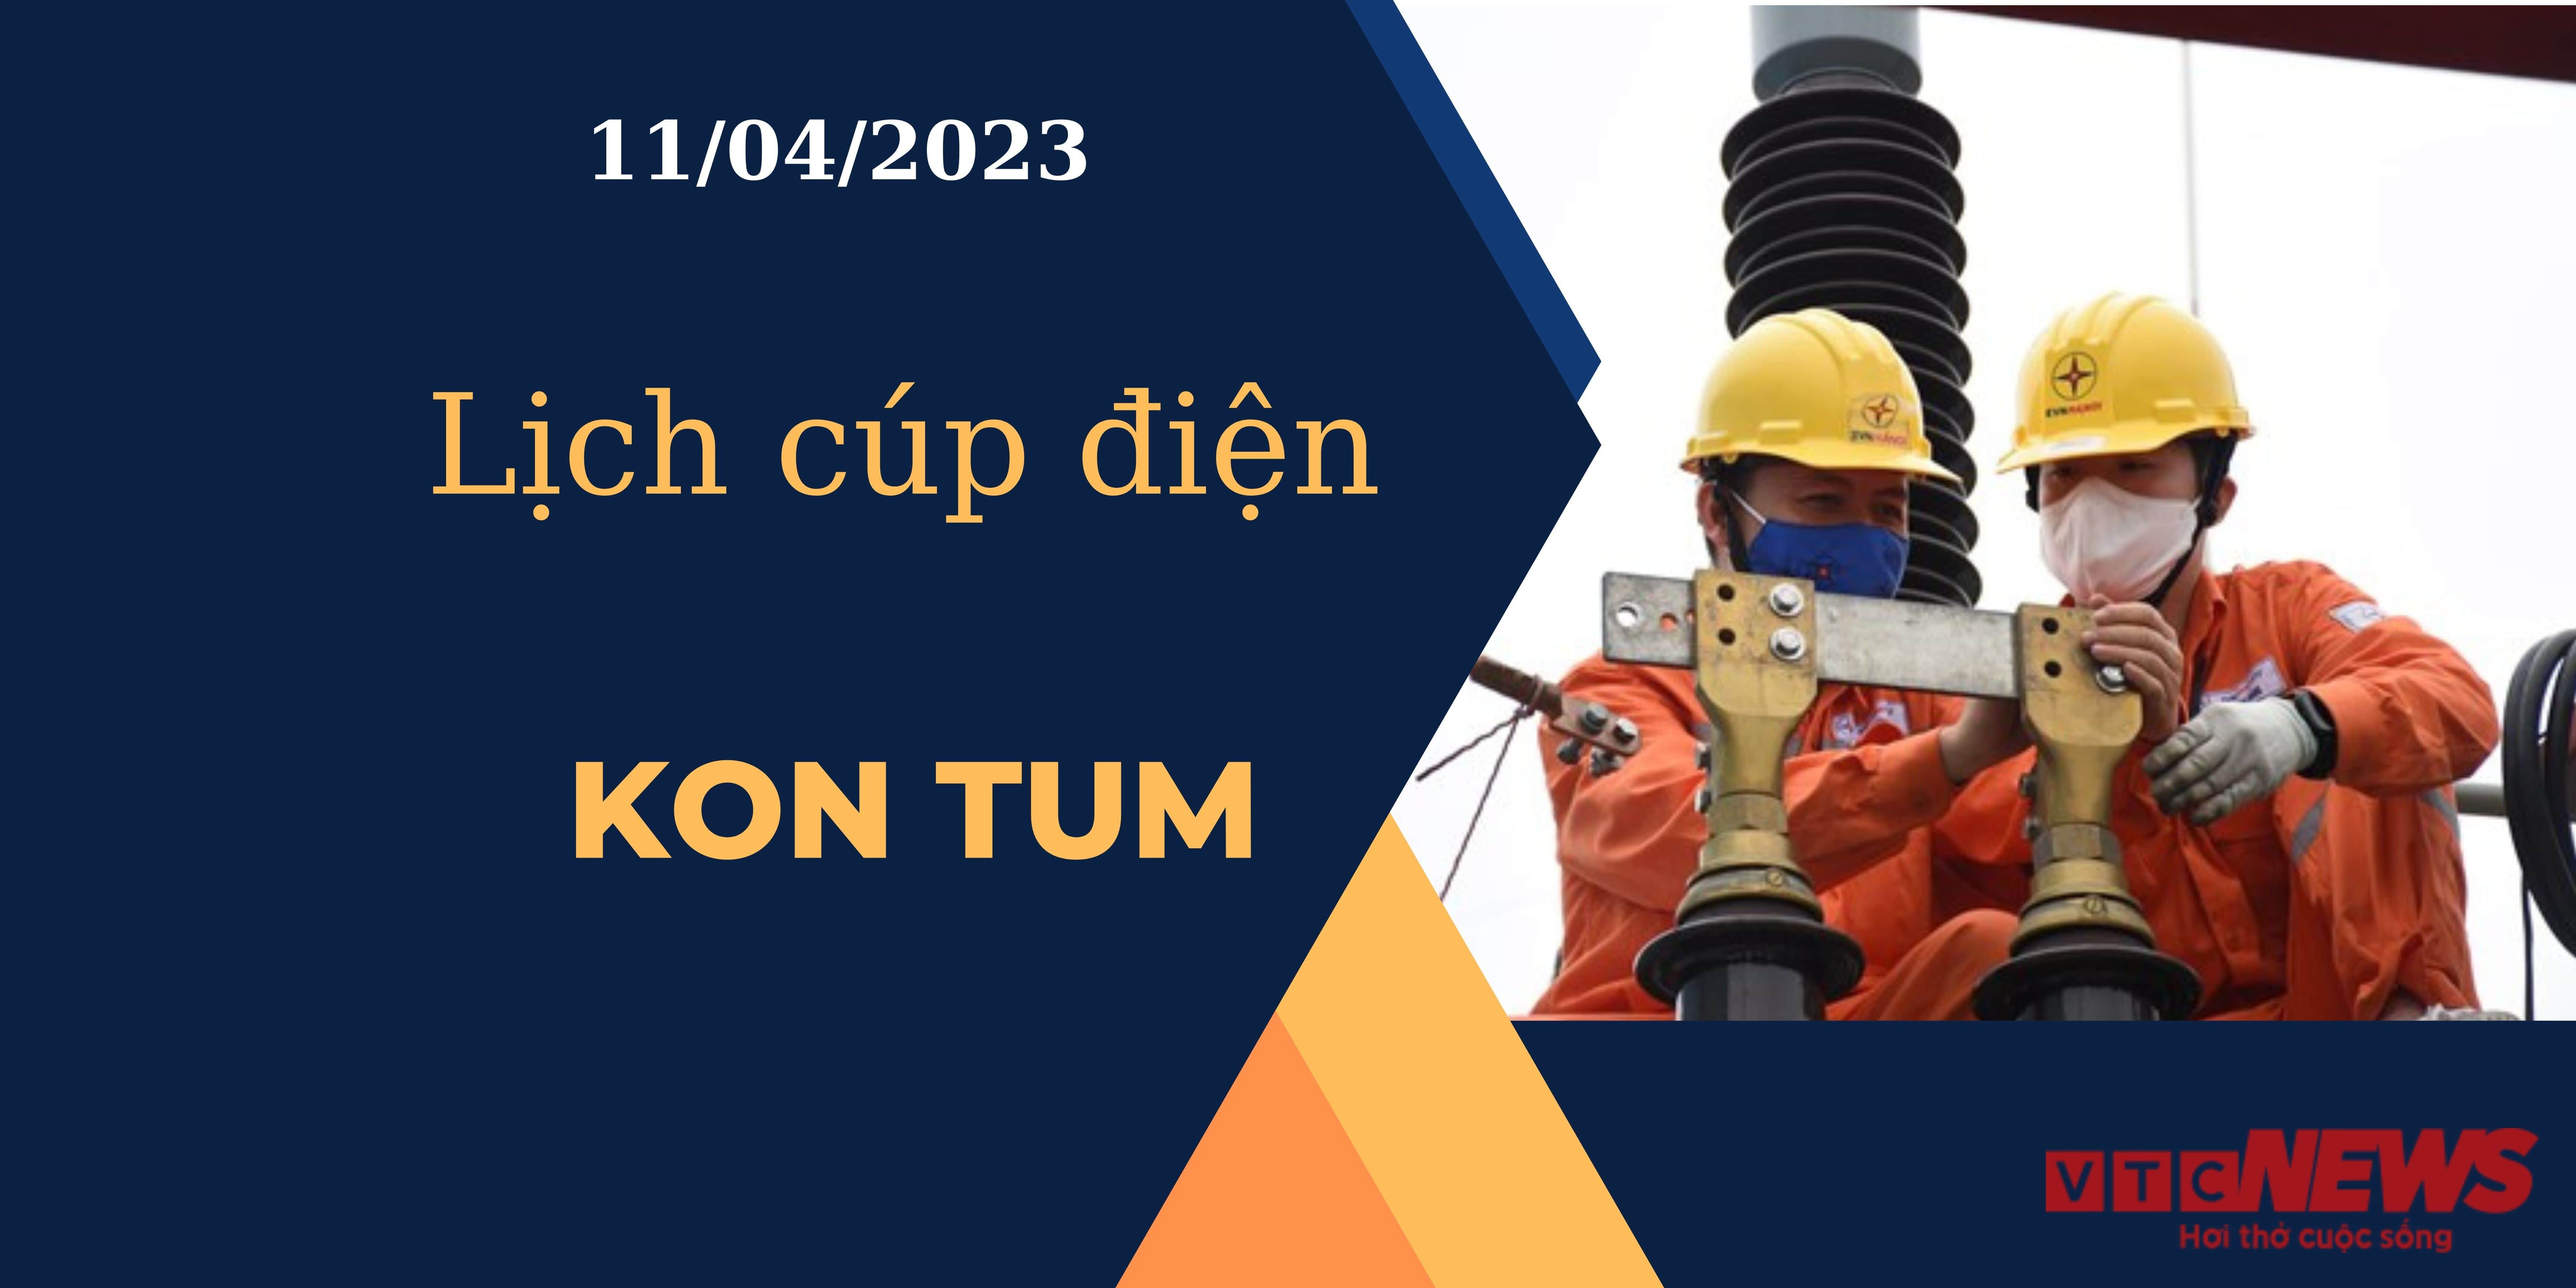 Lịch cúp điện hôm nay ngày 11/04/2023 tại Kon Tum - 1